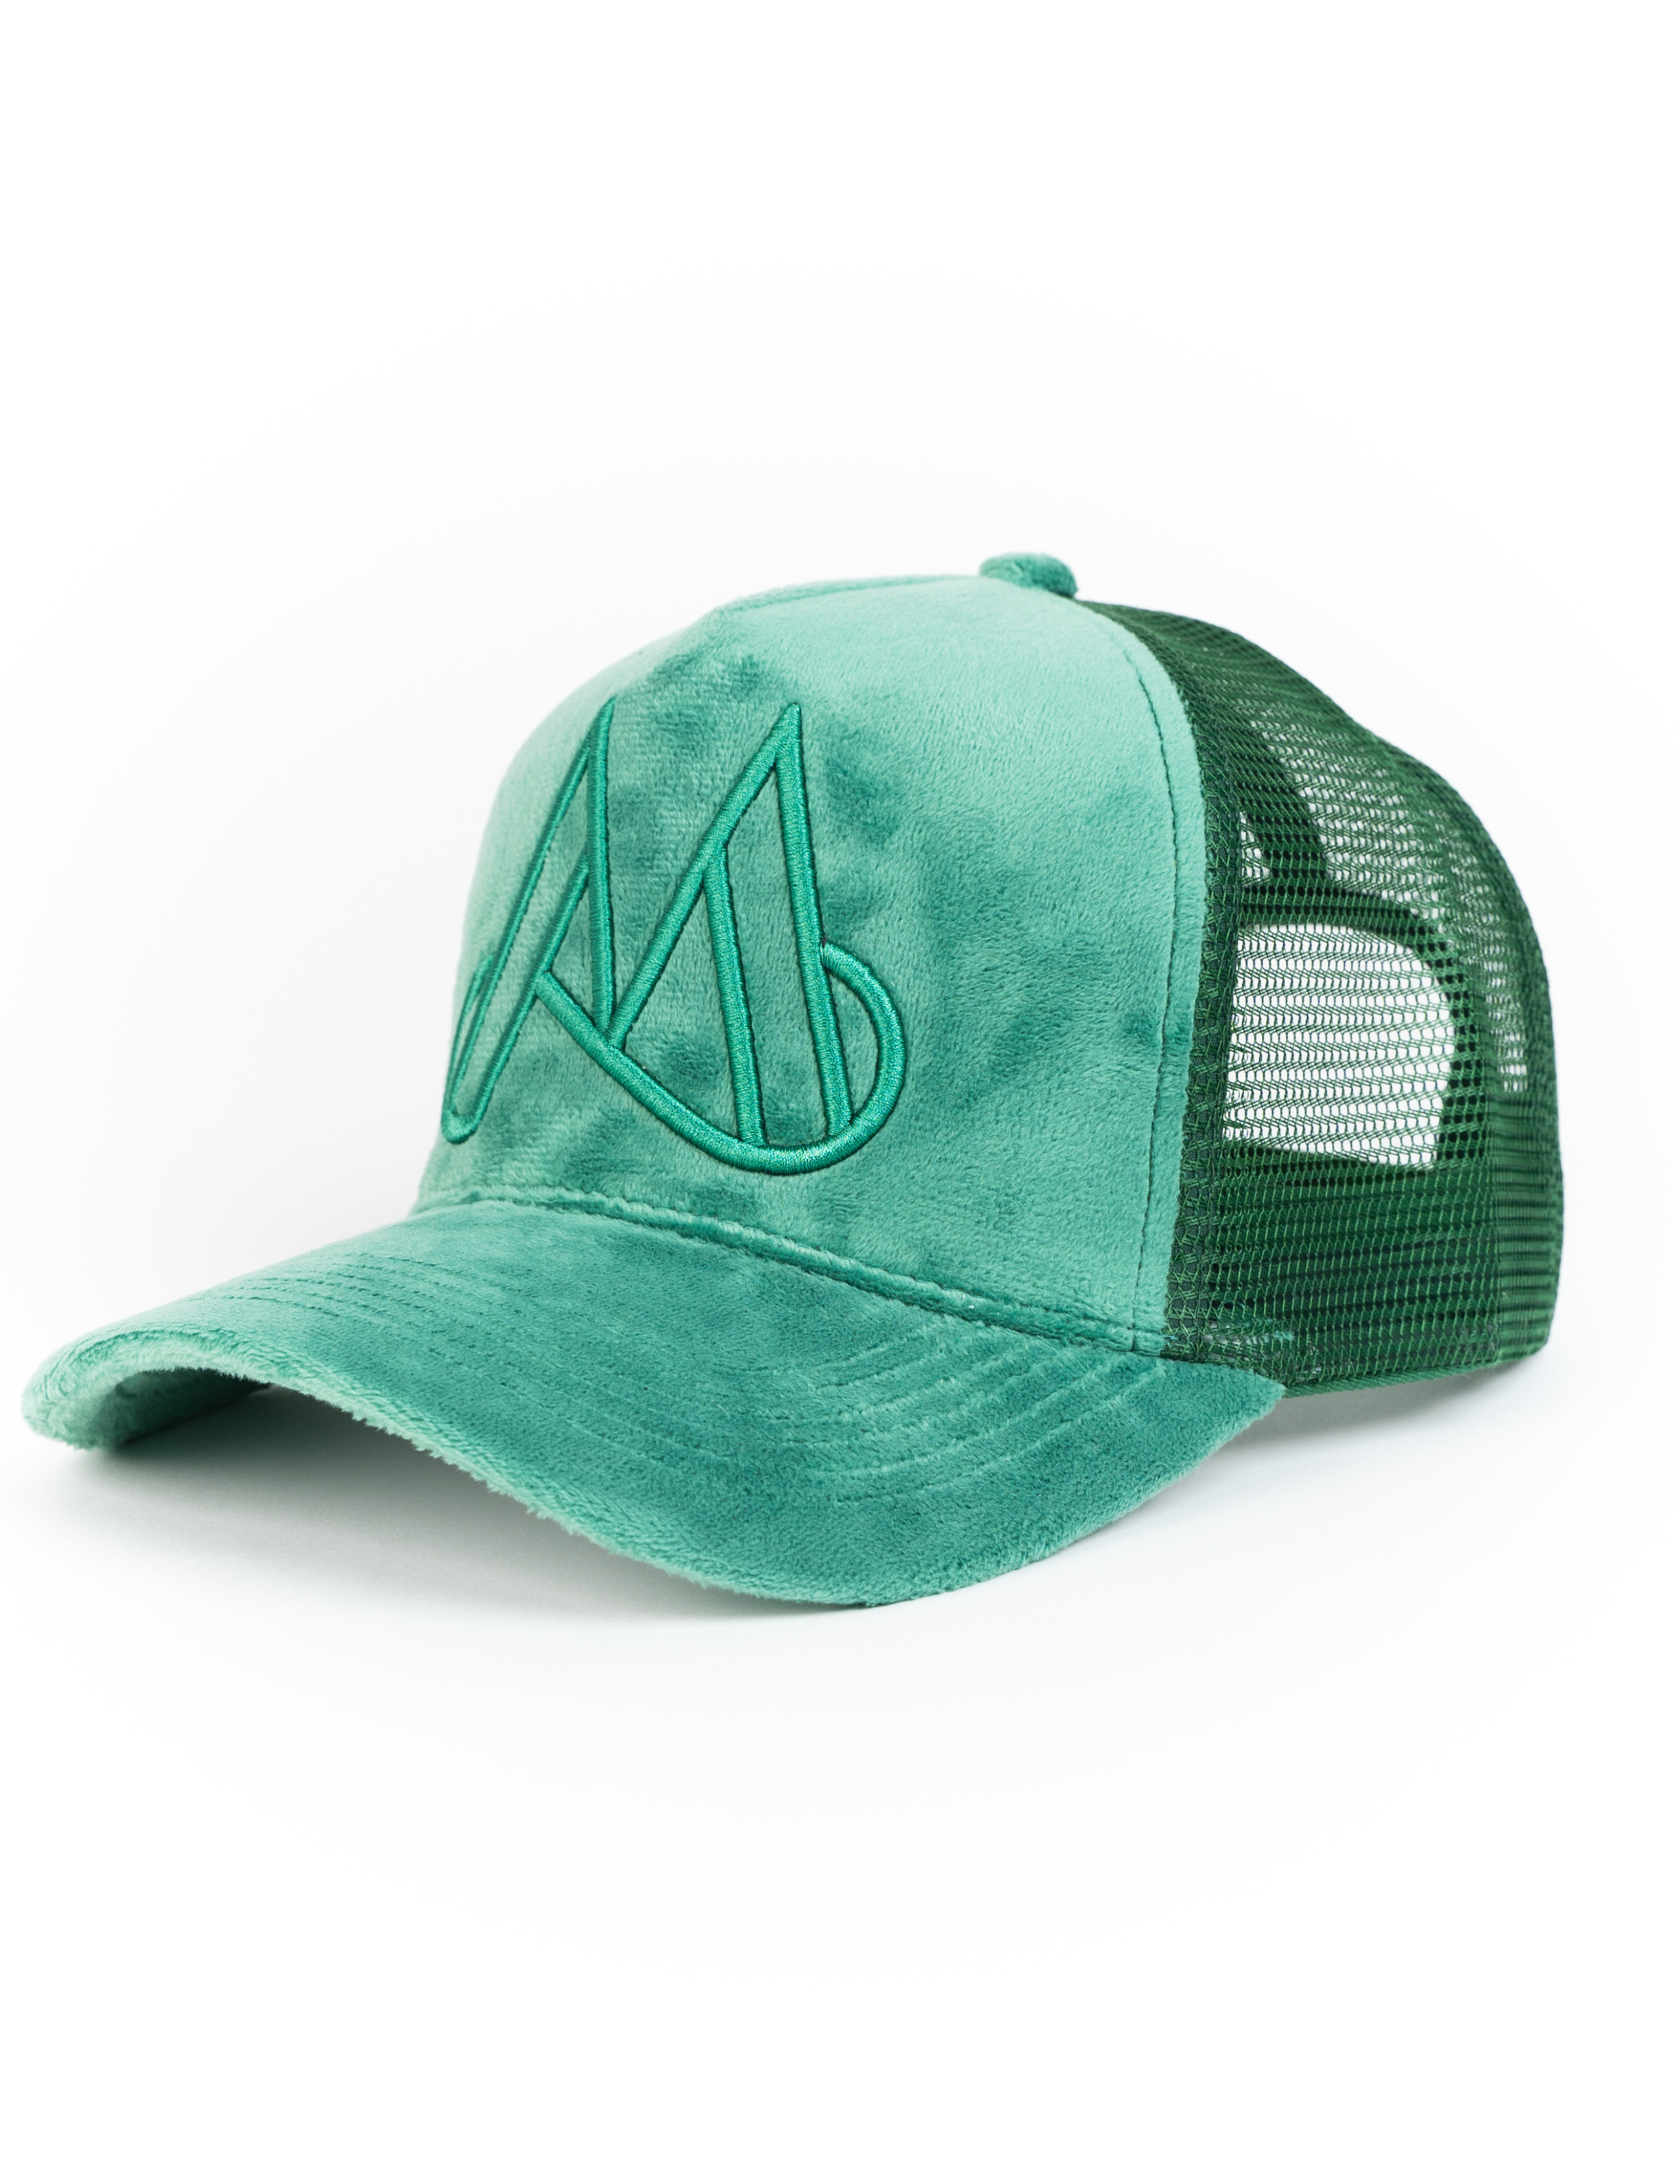 MAGGIORE Unlimited M Logo Green Cap - MAGGIORE